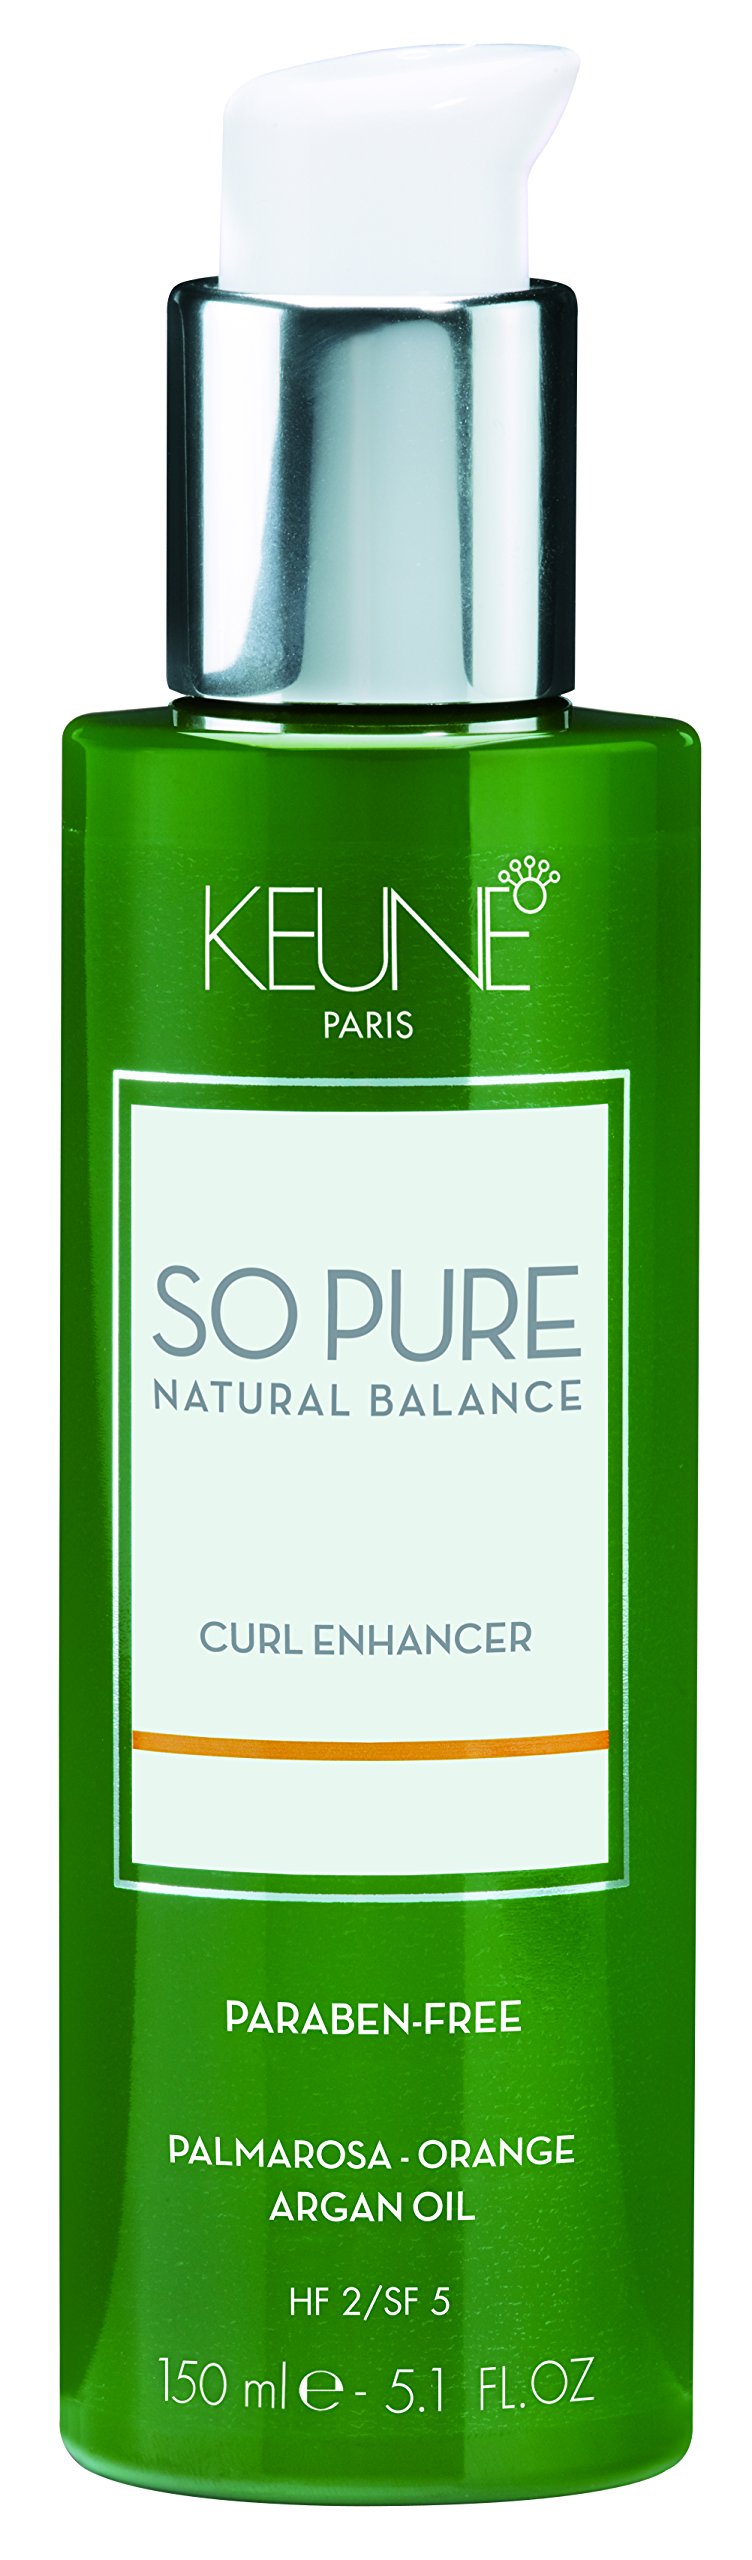 Keune So Pure Curl Enhancer 150ml